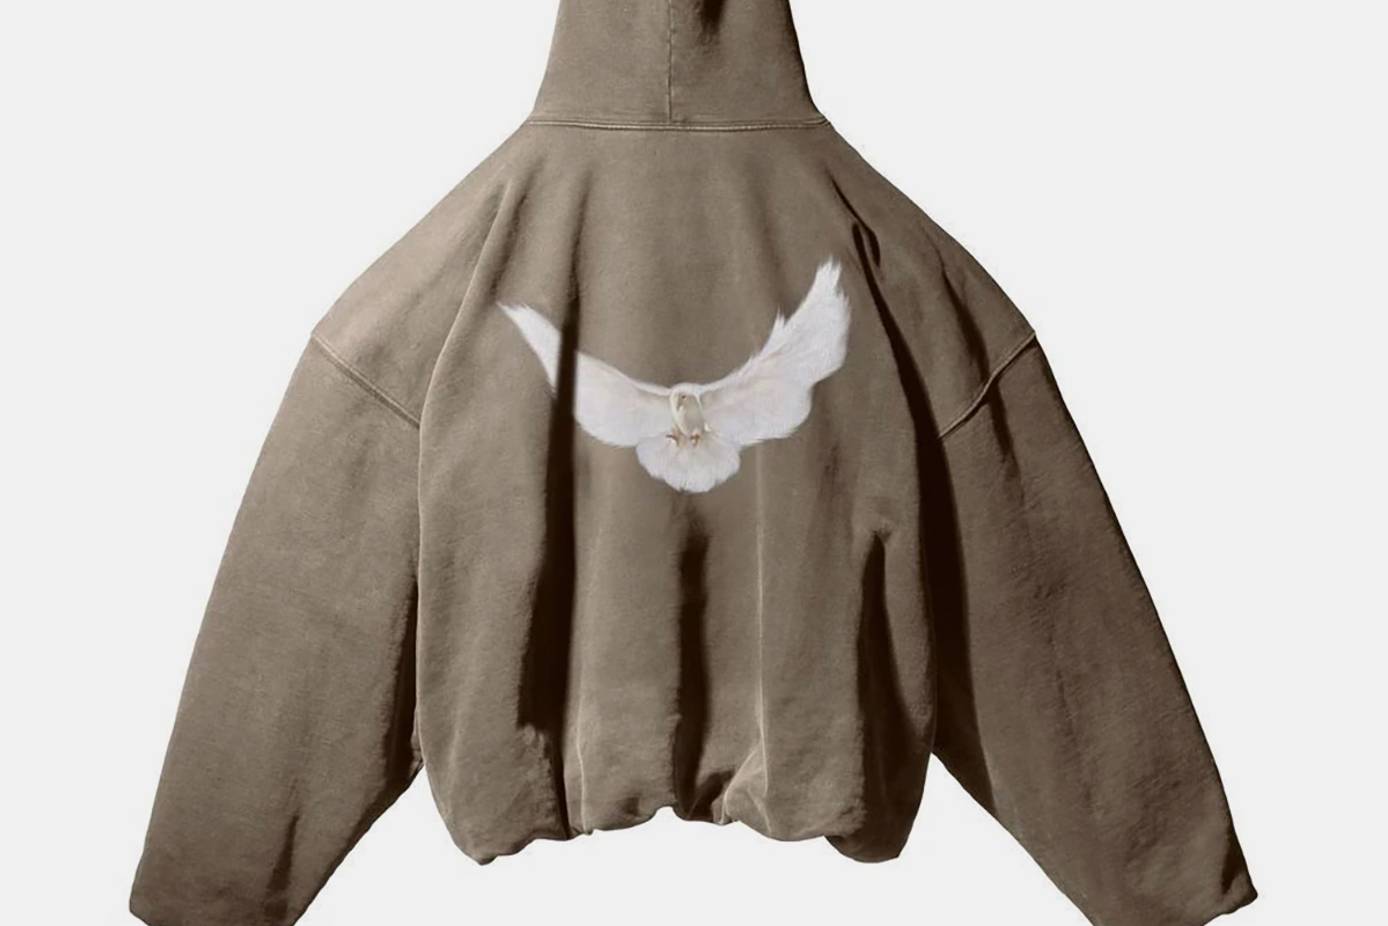 Una profética paloma alumbra el lanzamiento “Yeezy Gap Engineered by Balenciaga”